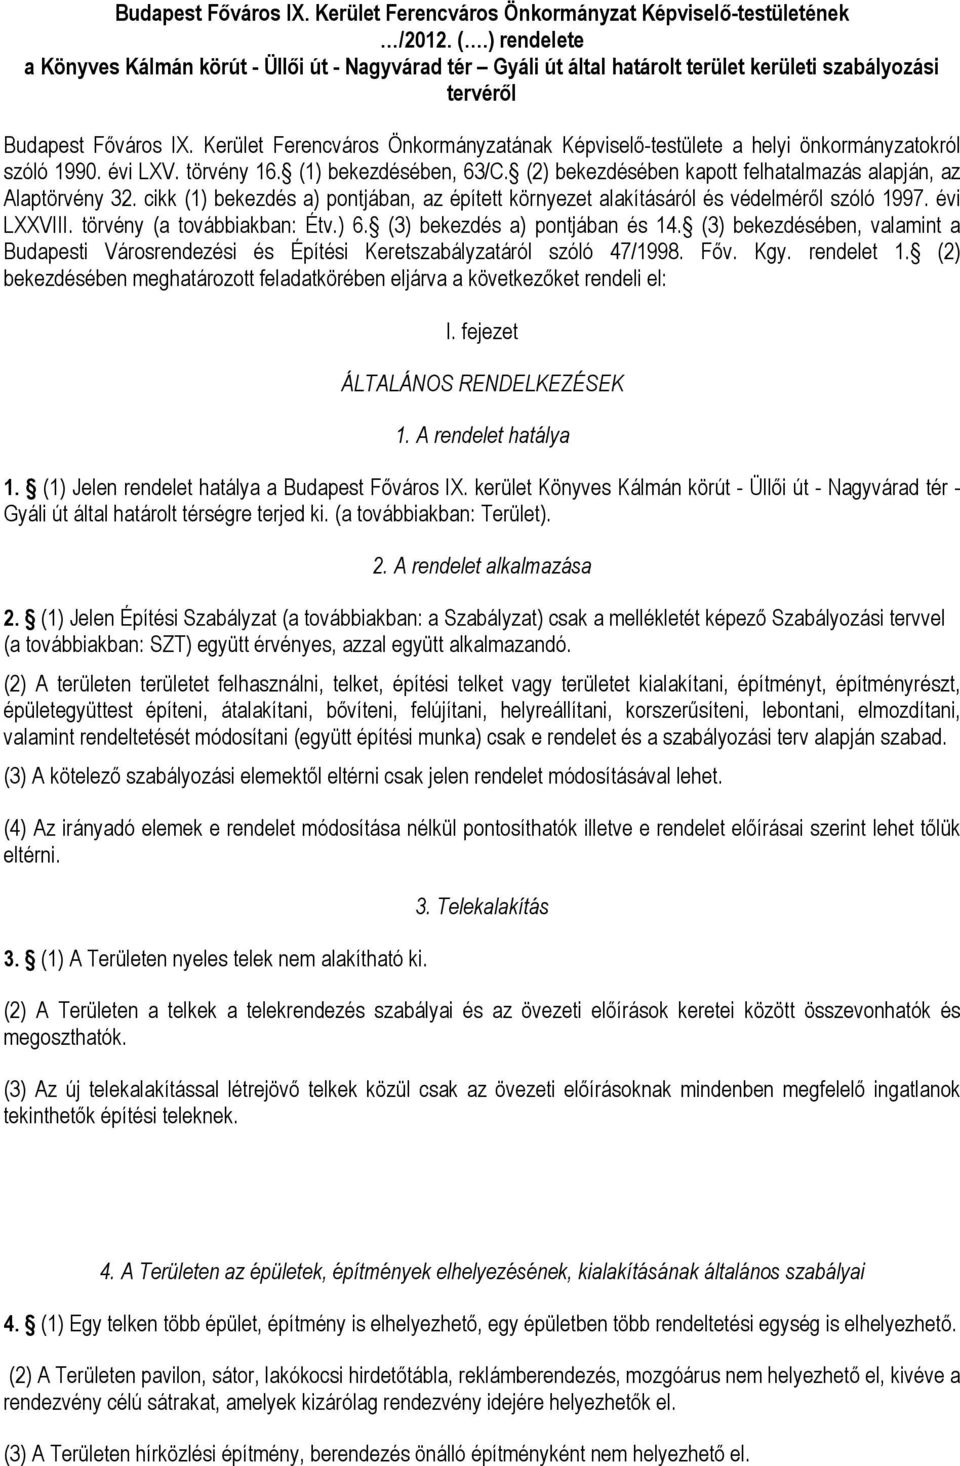 Kerület Ferencváros Önkormányzatának Képviselő-testülete a helyi önkormányzatokról szóló 1990. évi LXV. törvény 16. (1) bekezdésében, 63/C.